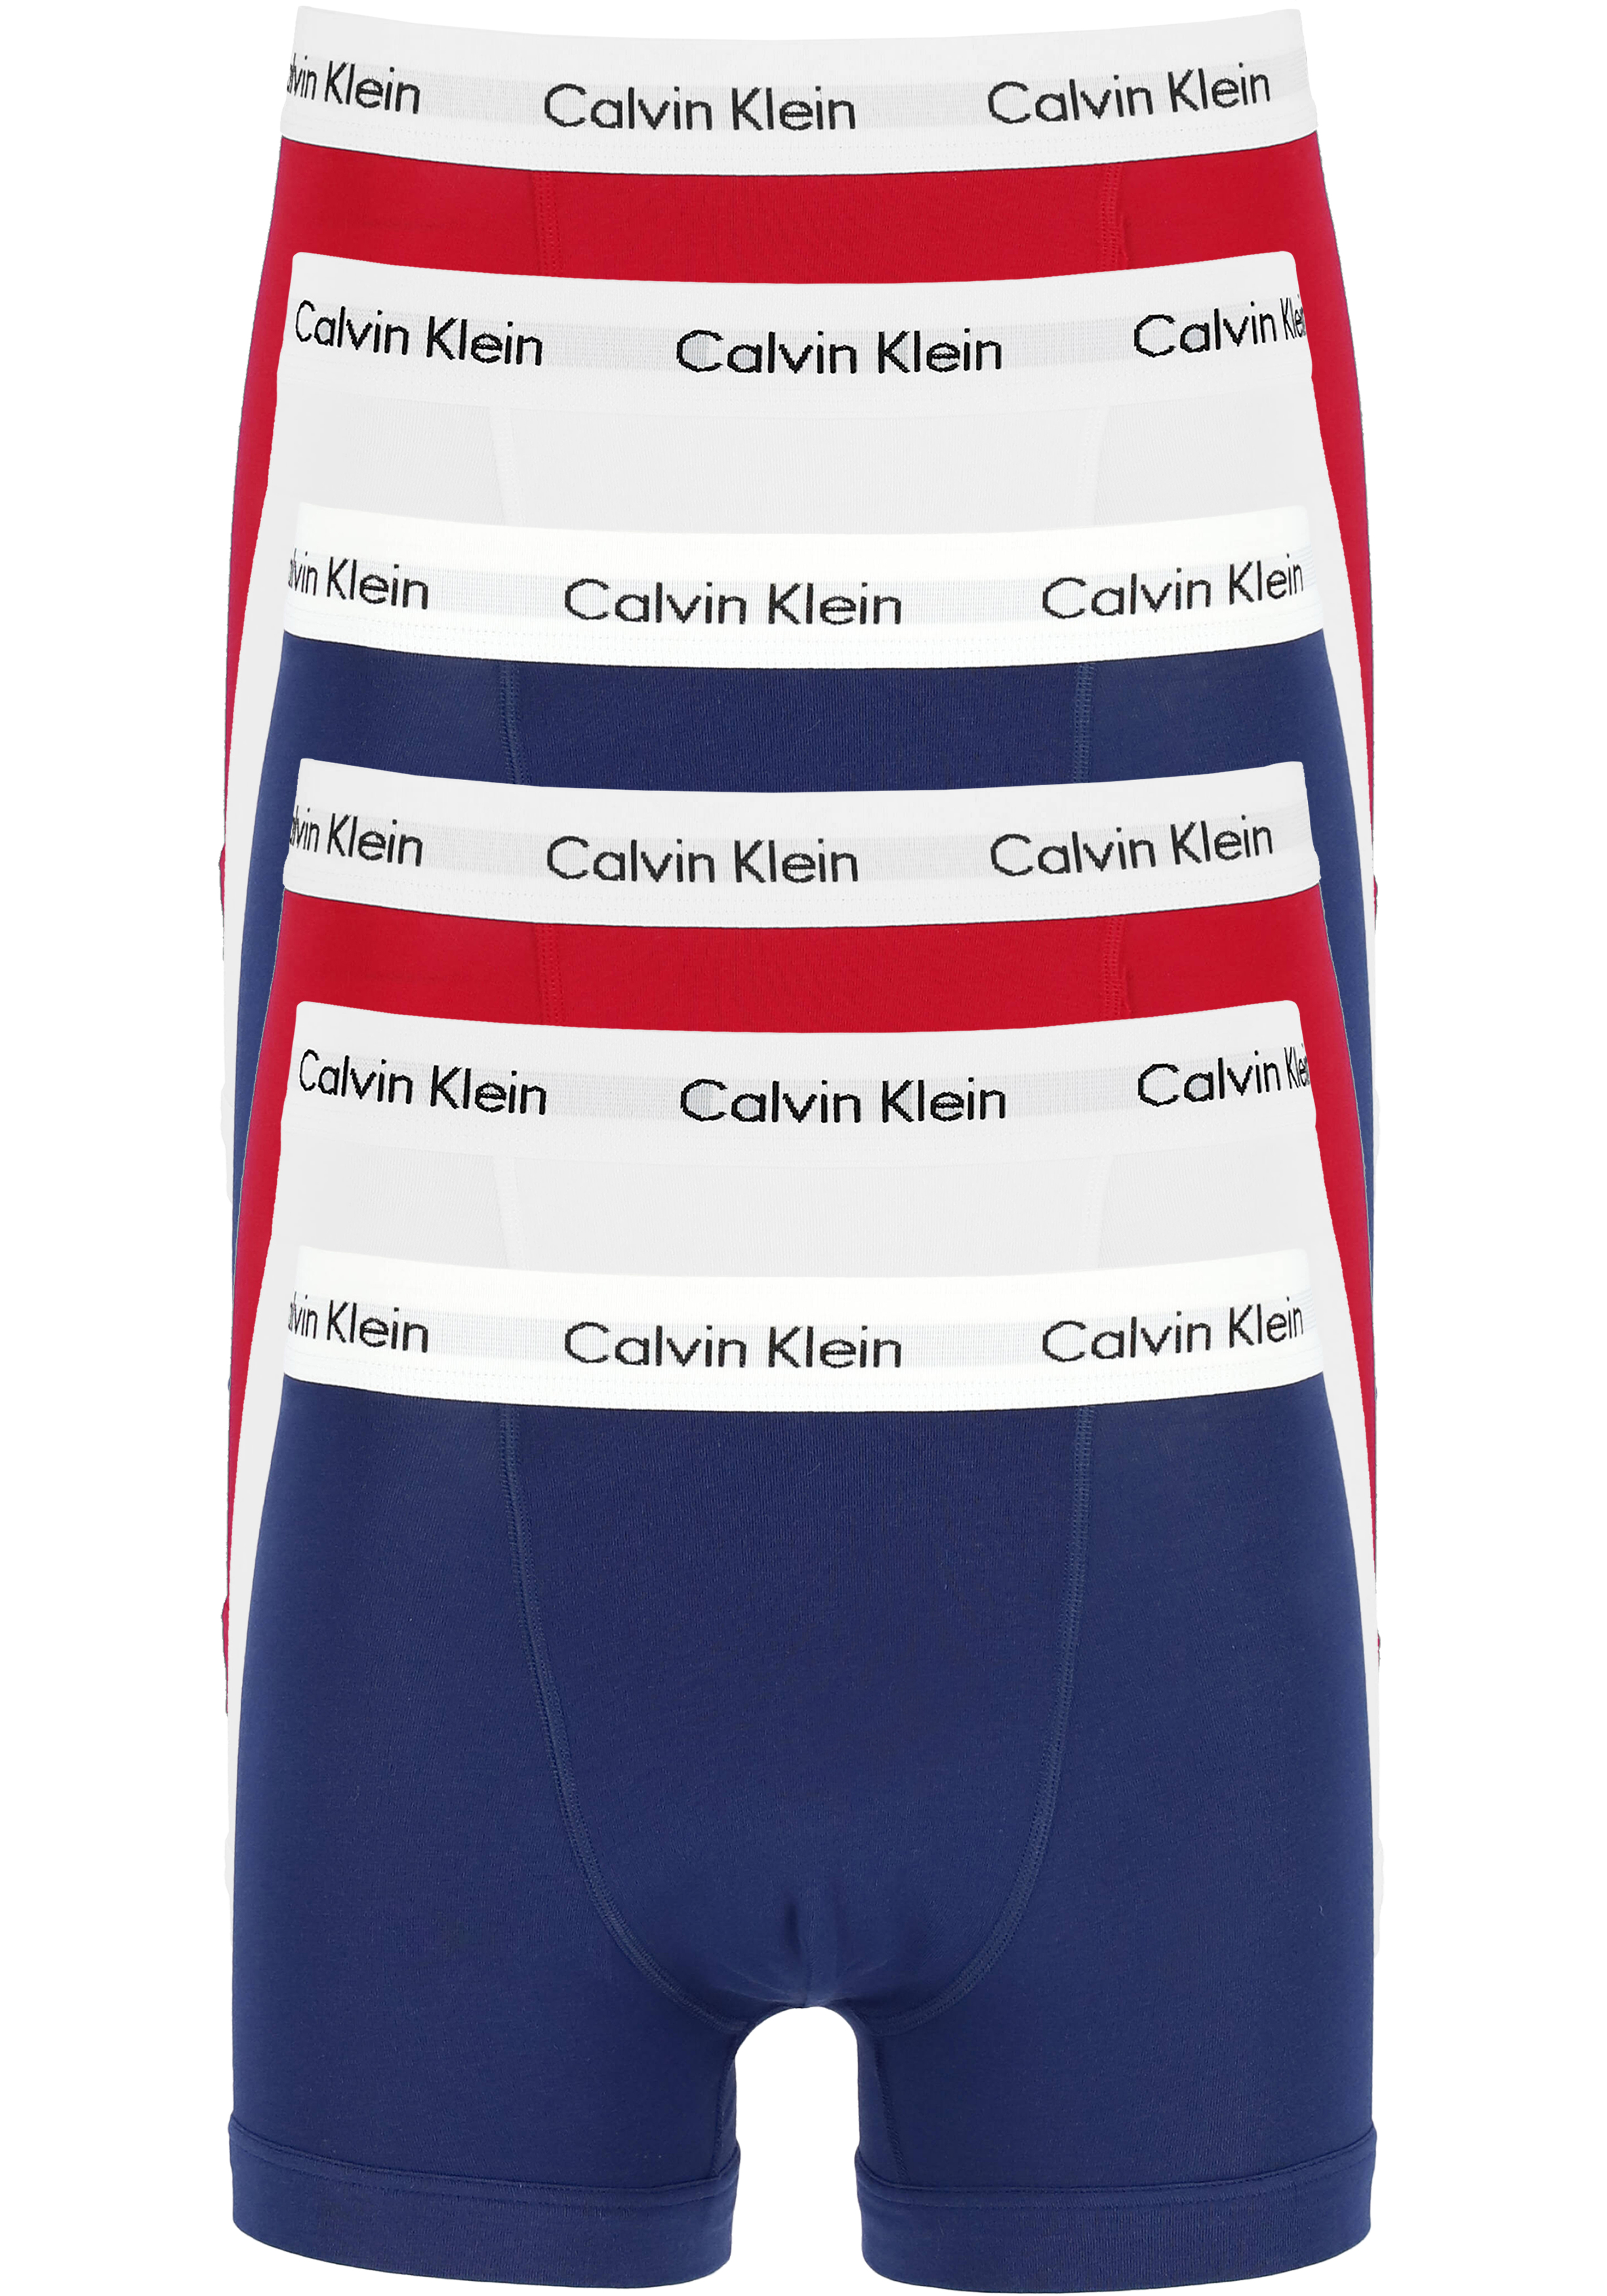 Bediening mogelijk heel veel Oproepen Actie 6-pack: Calvin Klein trunks, heren boxers normale lengte, rood,... -  Shop de nieuwste voorjaarsmode